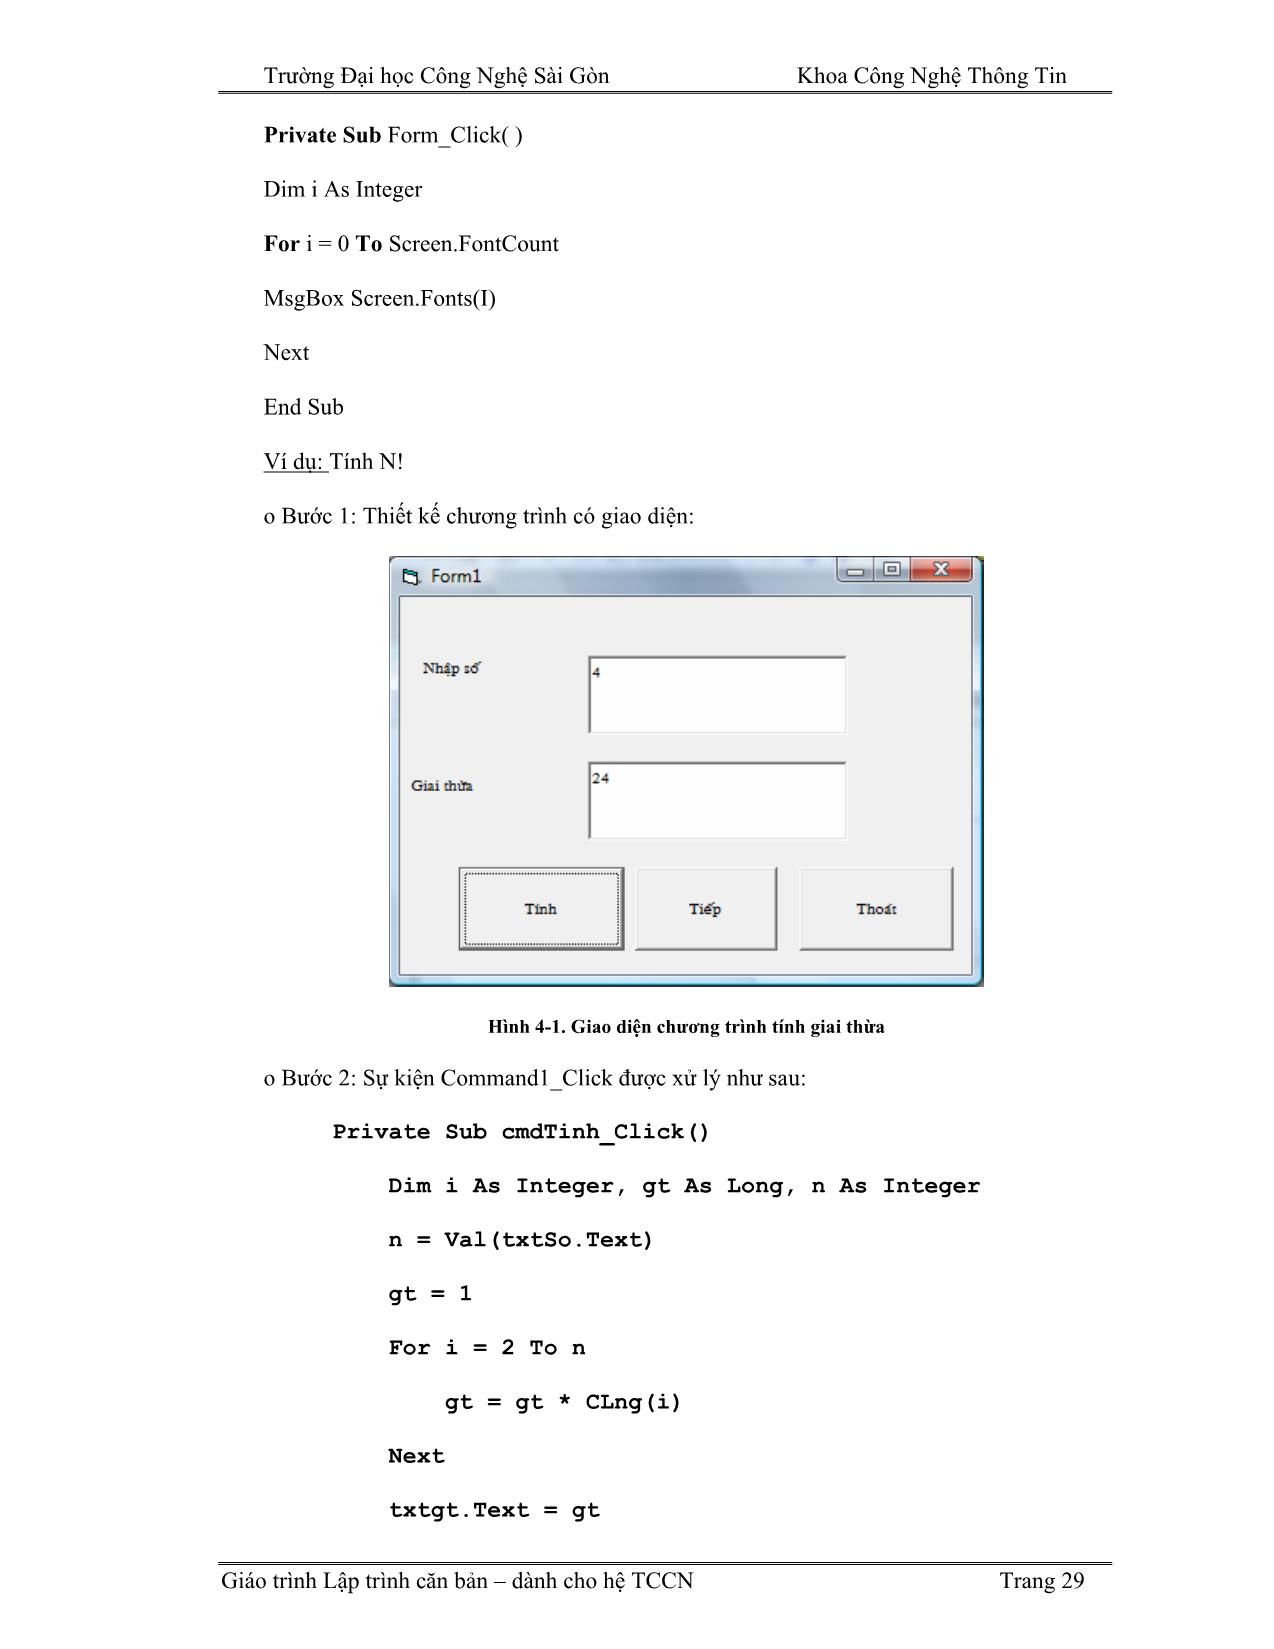 Giáo trình Lập trình căn bản Visual Basic (Phần 2) trang 4